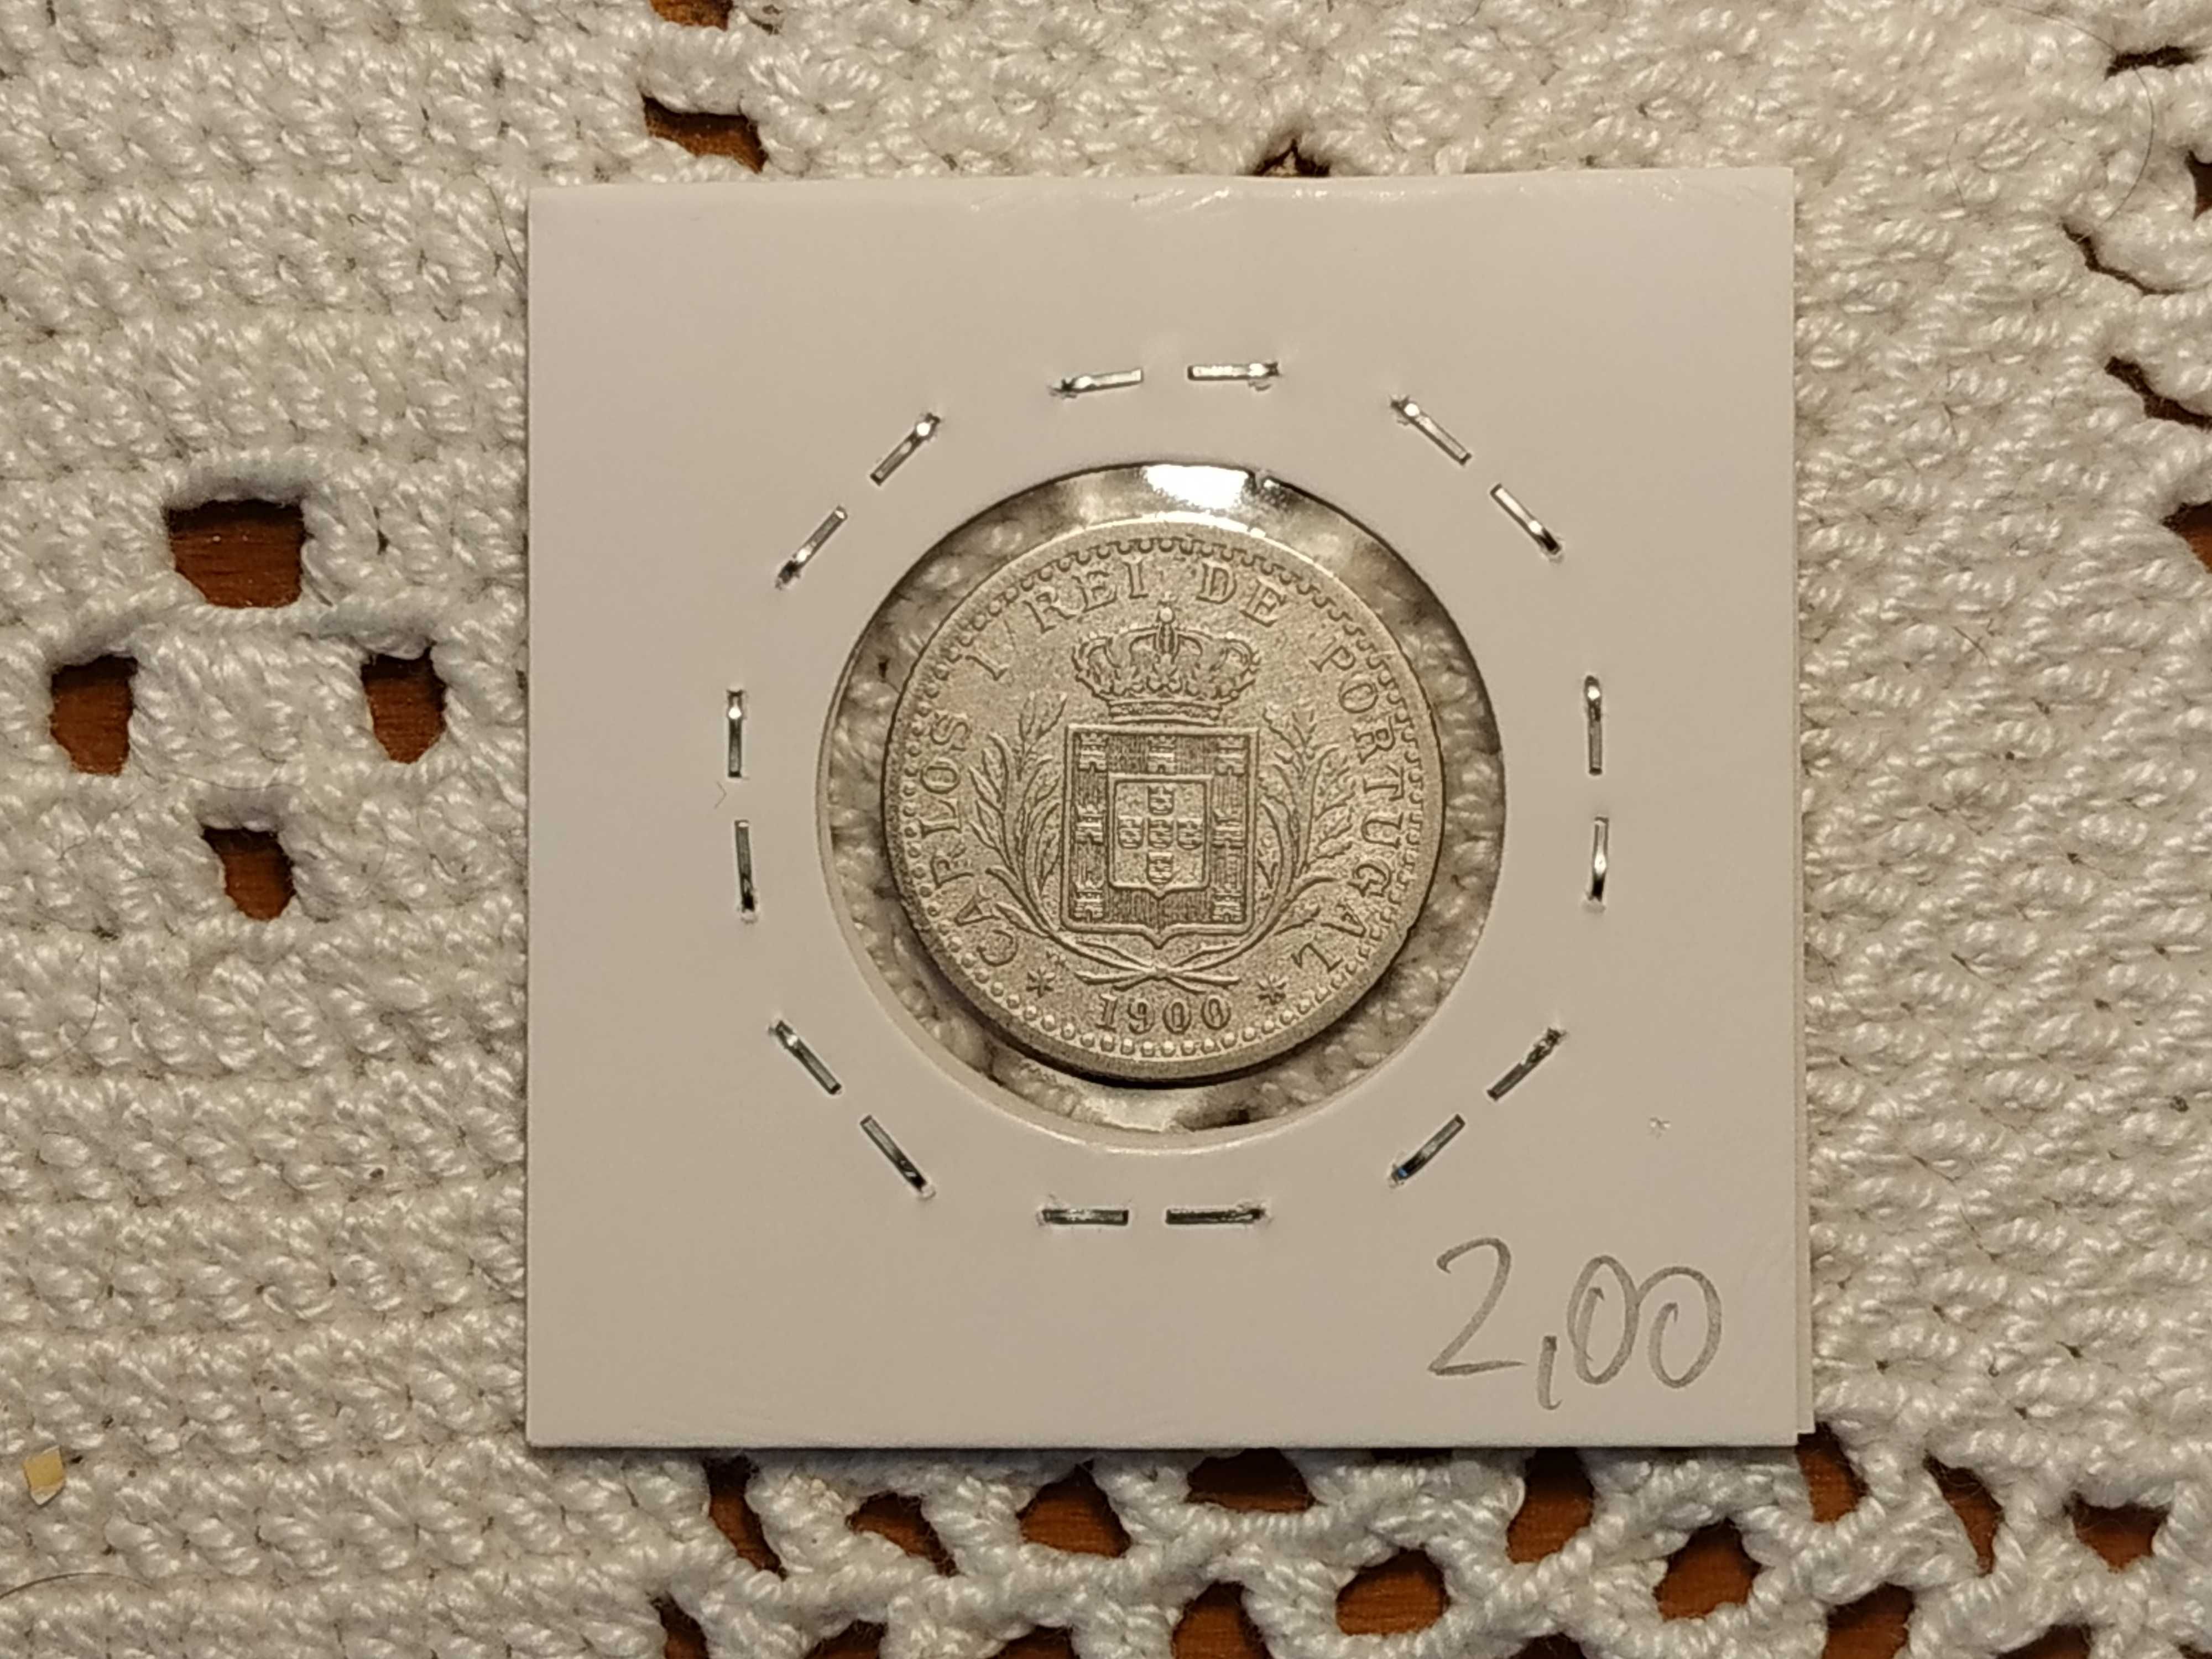 Portugal - moeda de 100 reis de 1900 (VG)